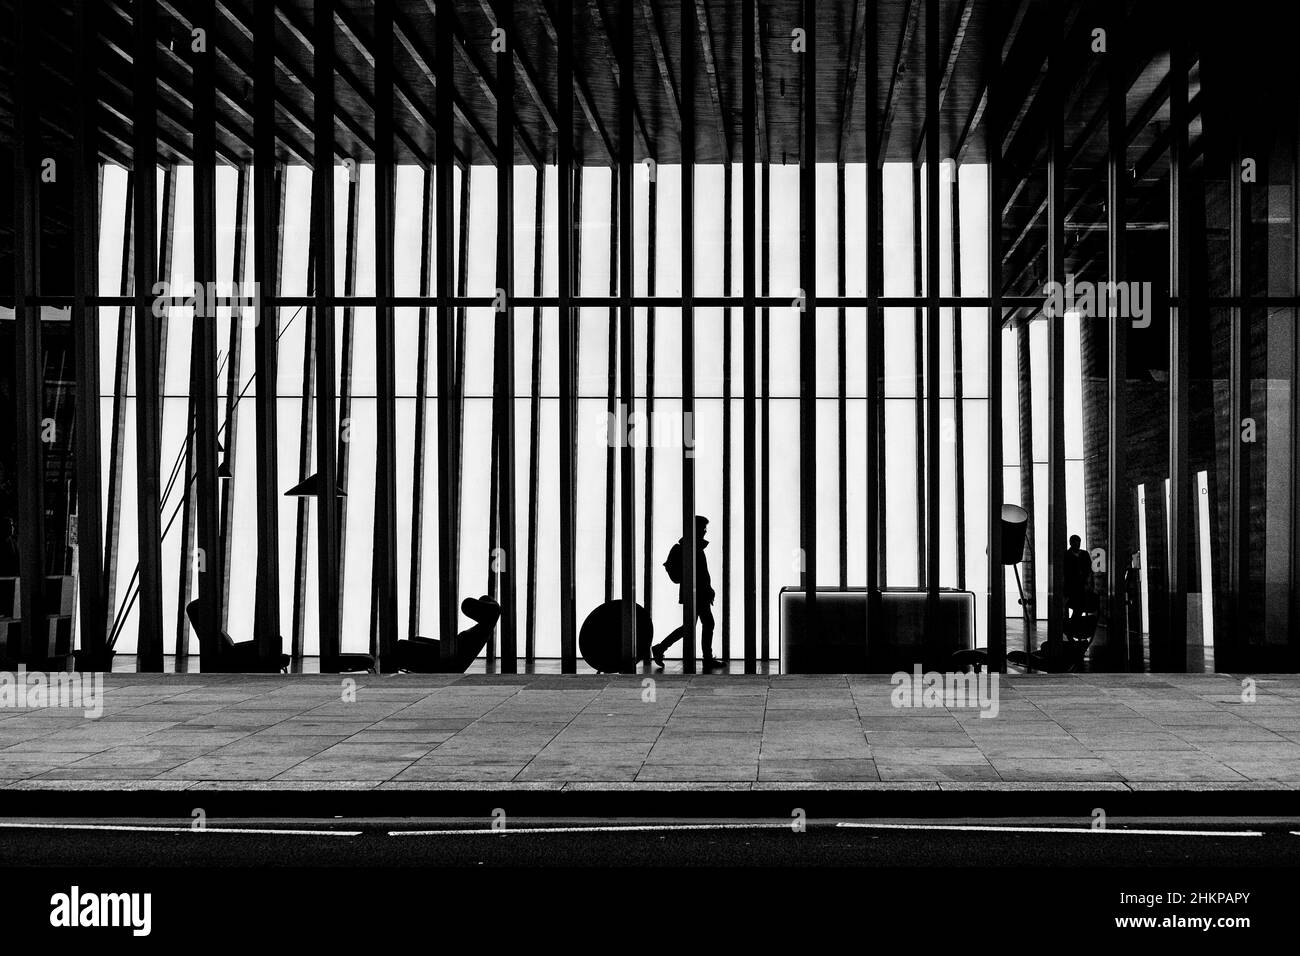 Fotografia urbana in bianco e nero di Londra: Figura a forma di sagome nell'atrio dell'edificio moderno. Londra, Regno Unito Foto Stock